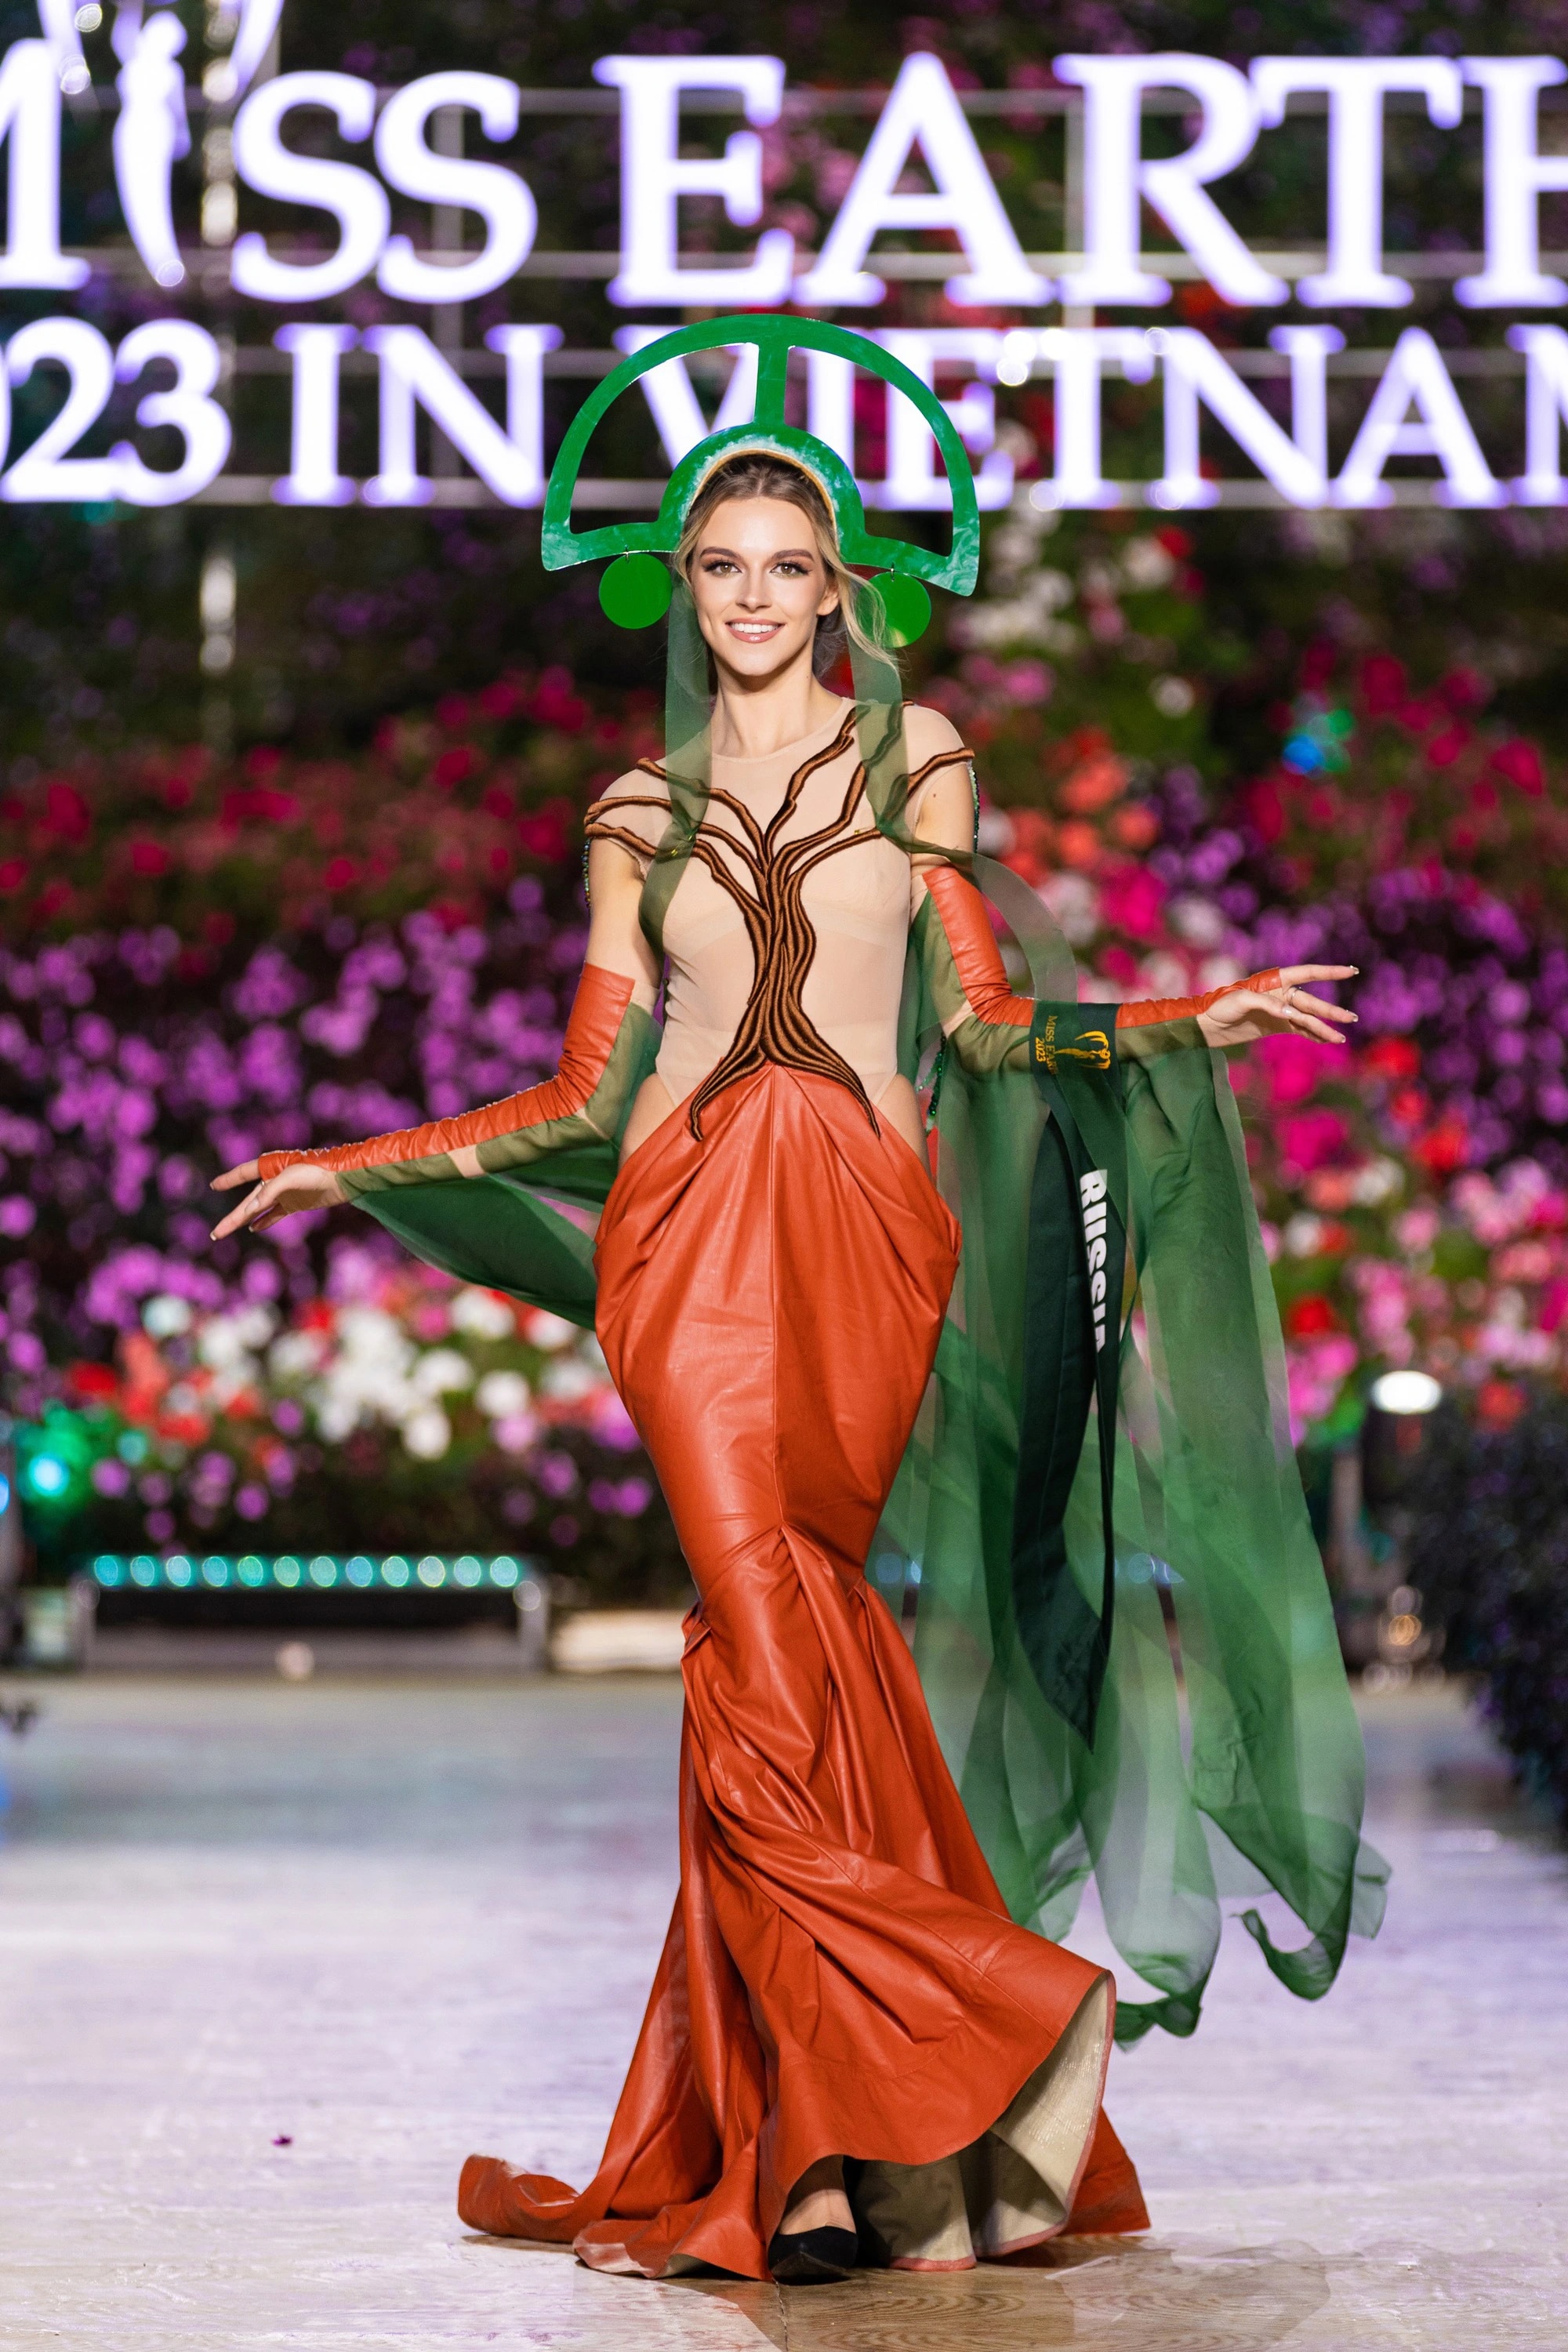 Bán kết Miss Earth 2023 màn trình Trang phục Dân tộc bùng nổ hình ảnh cỏ hoa, muông thú - Ảnh 11.